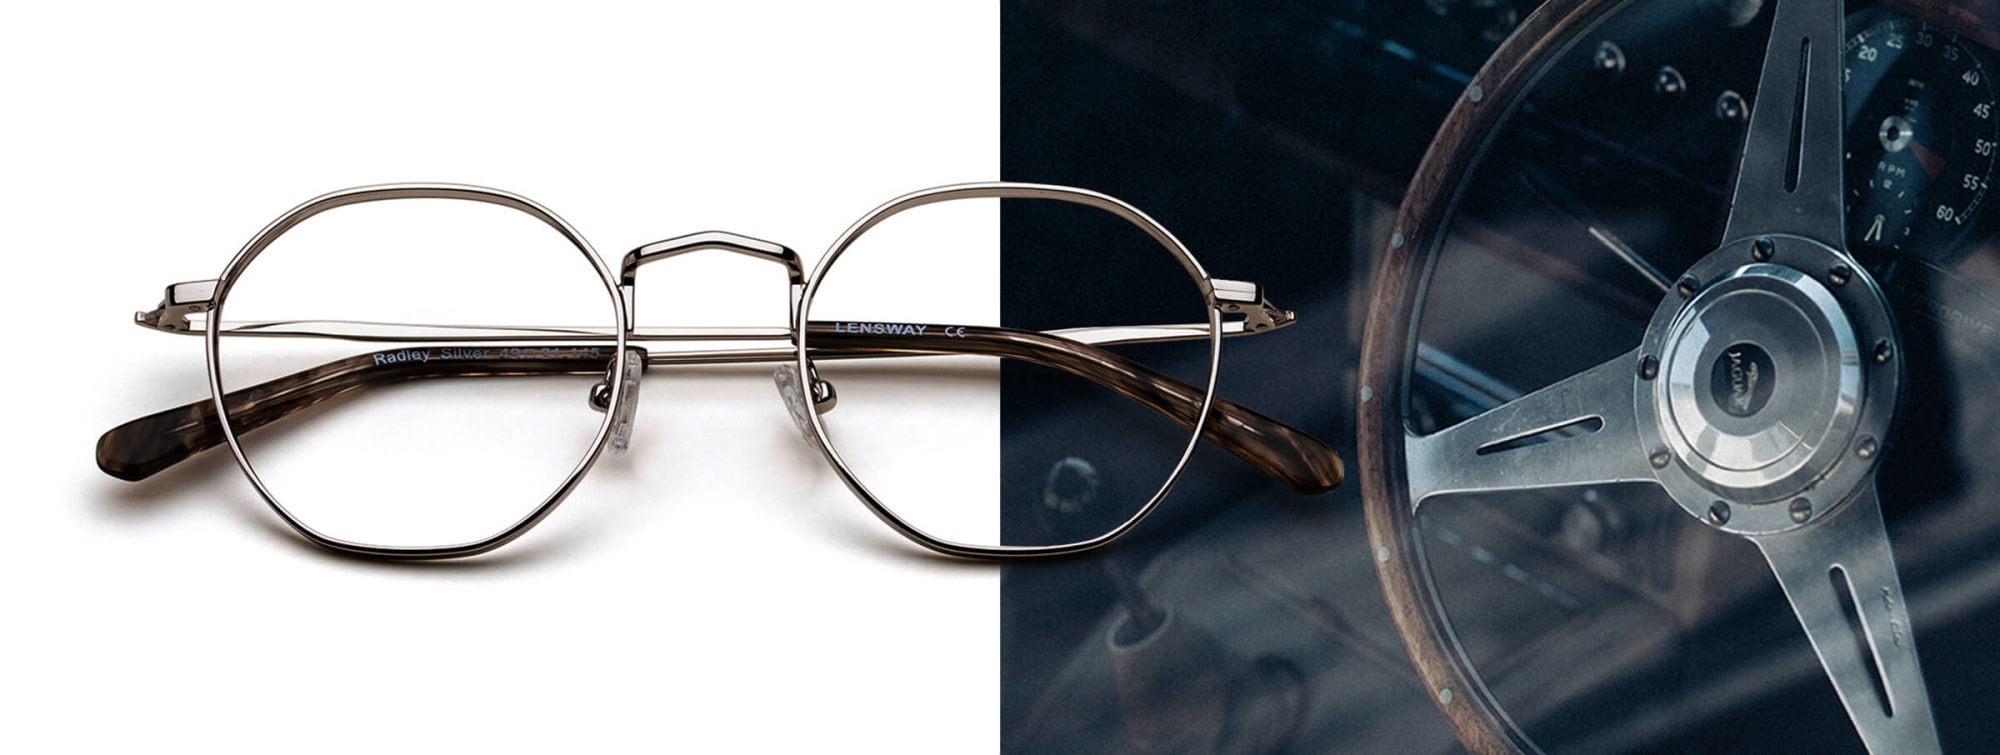 Billede af klassiske briller med tidløst design.